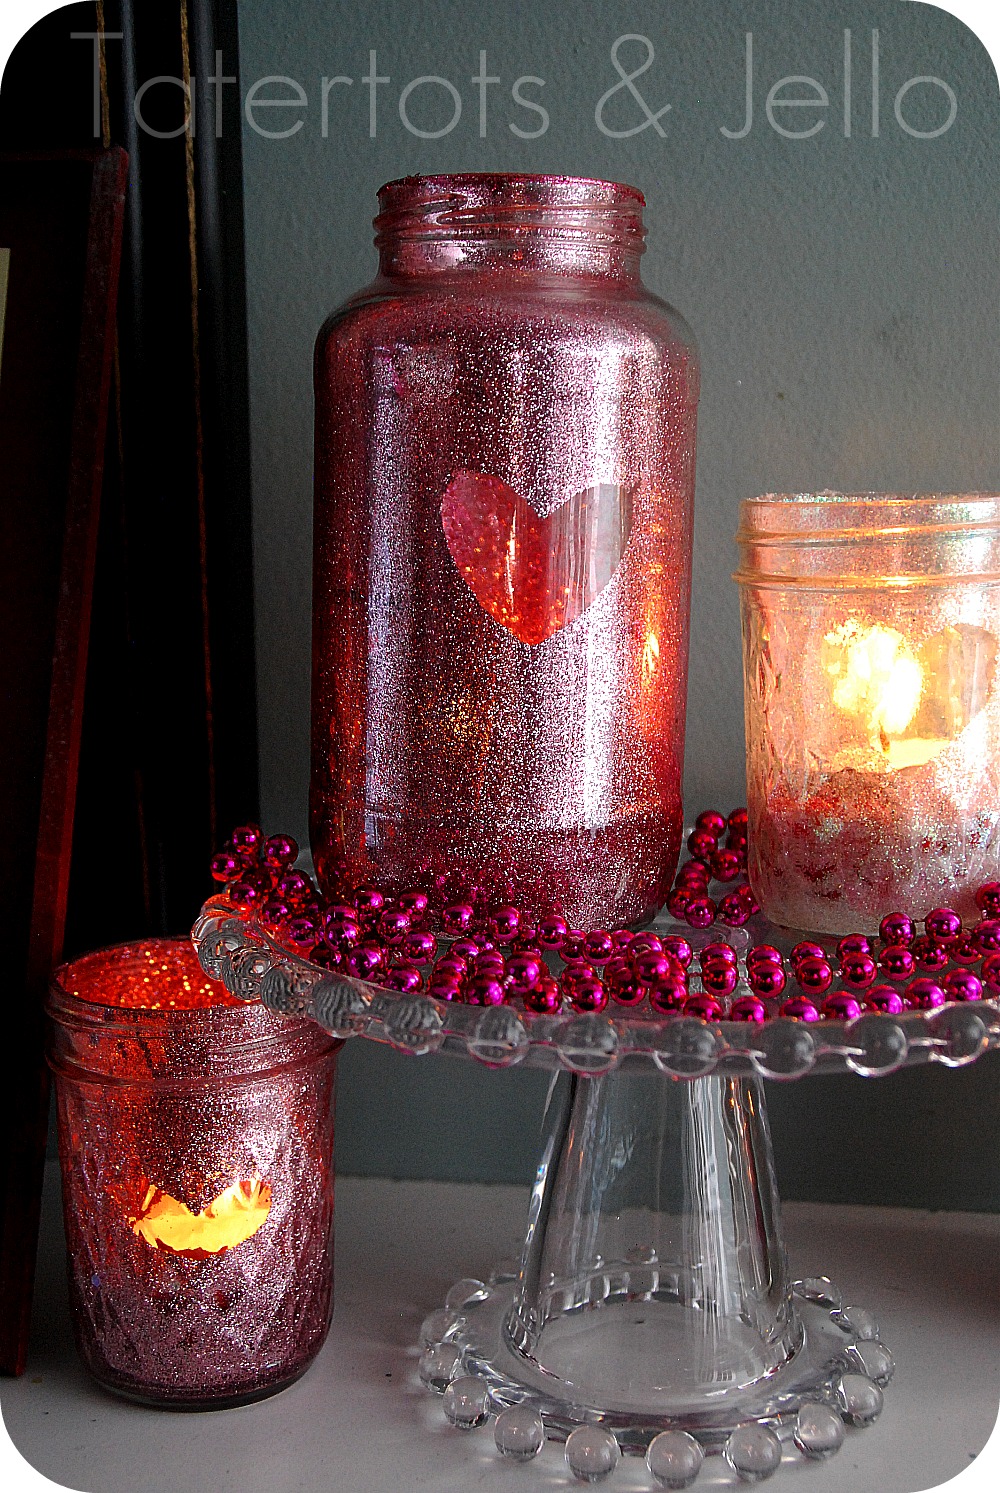 Valentine Glitter Votives - Mason Jar Crafts Love